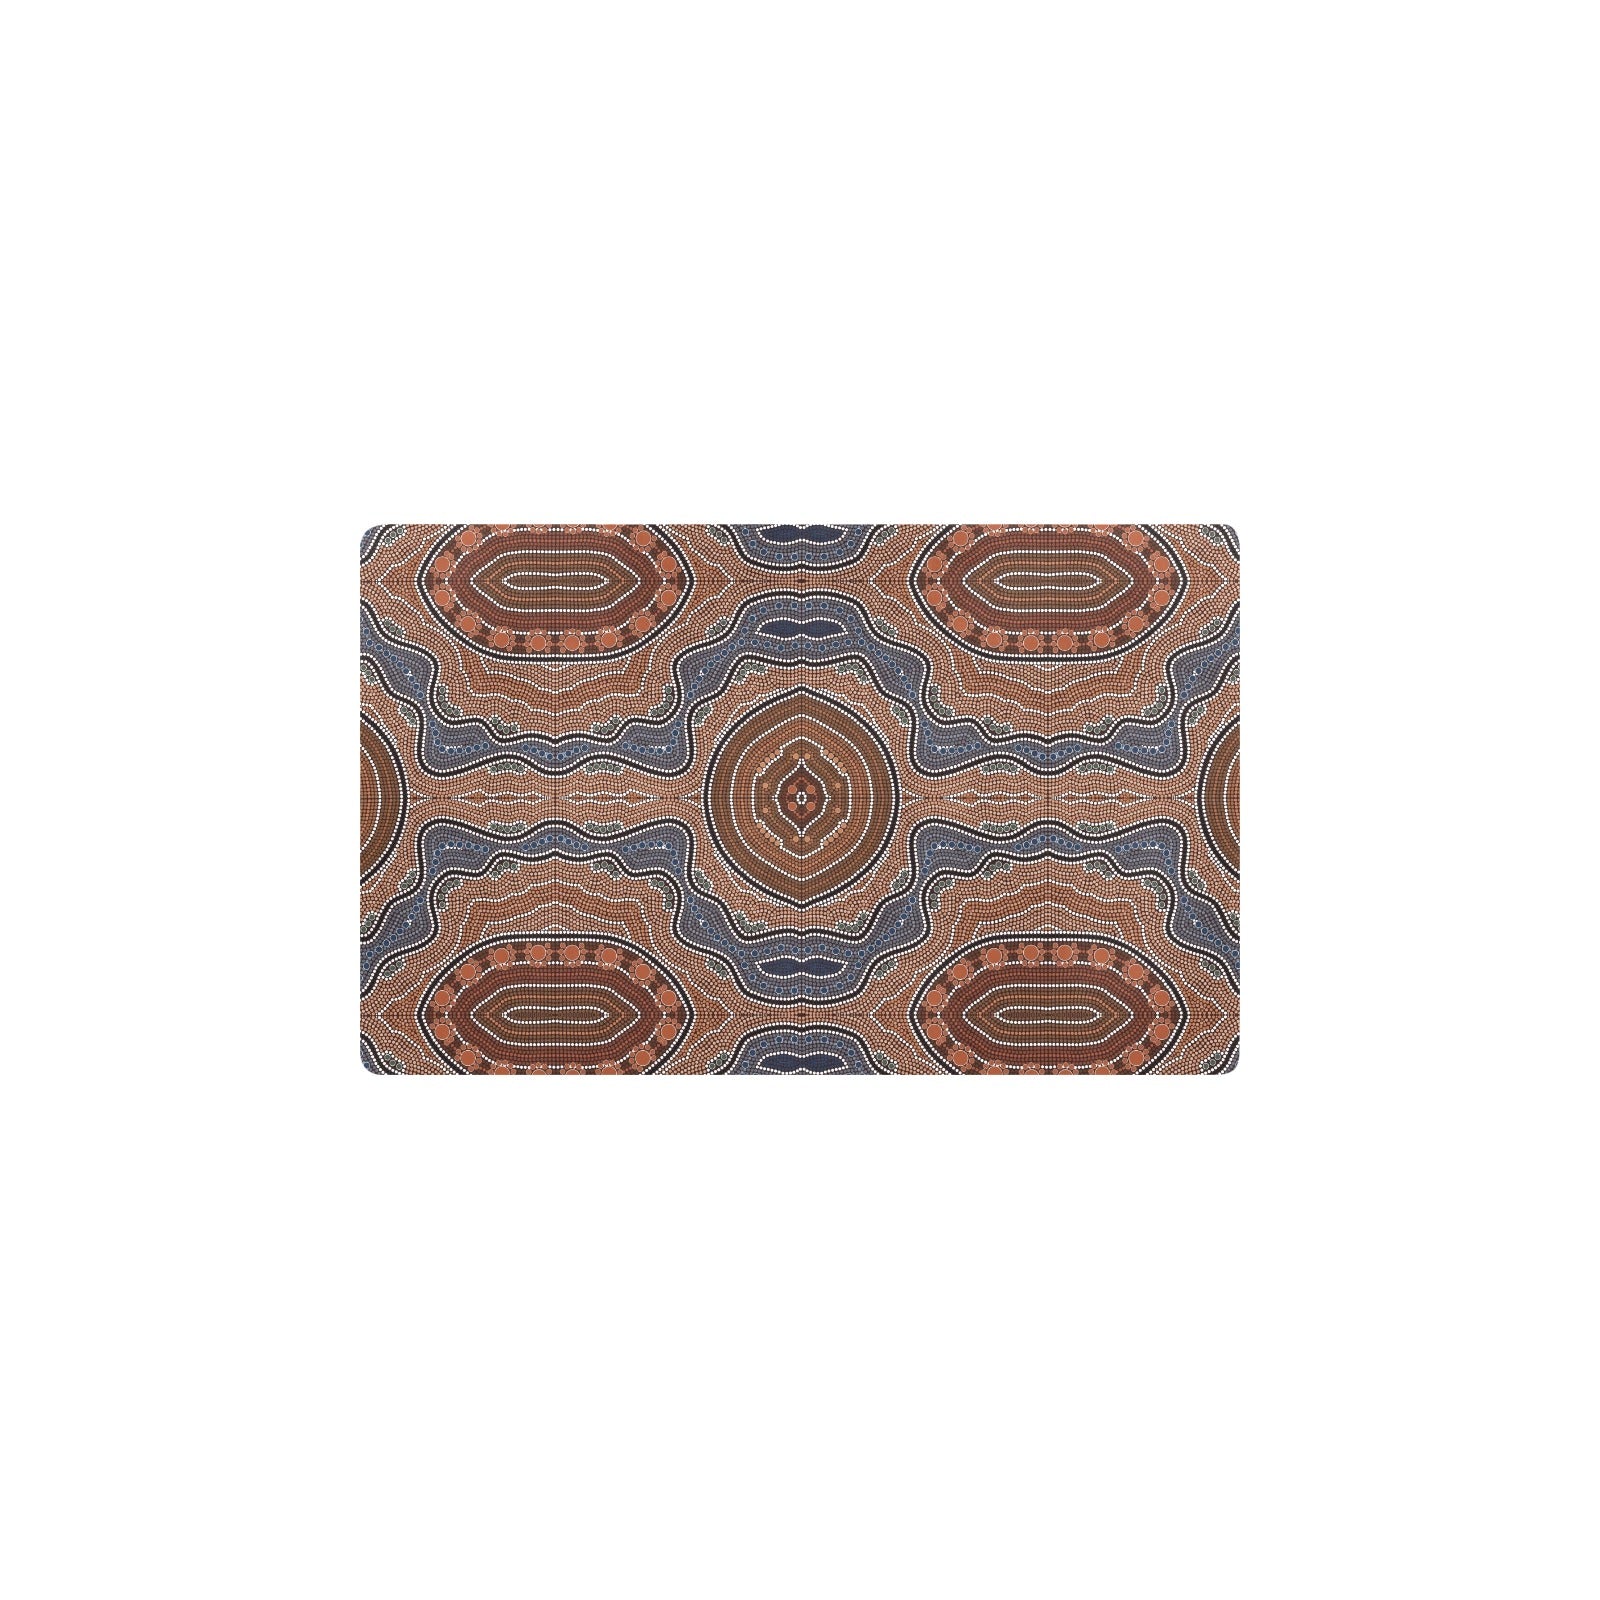 Aboriginal Pattern Print Design 01 Kitchen Mat